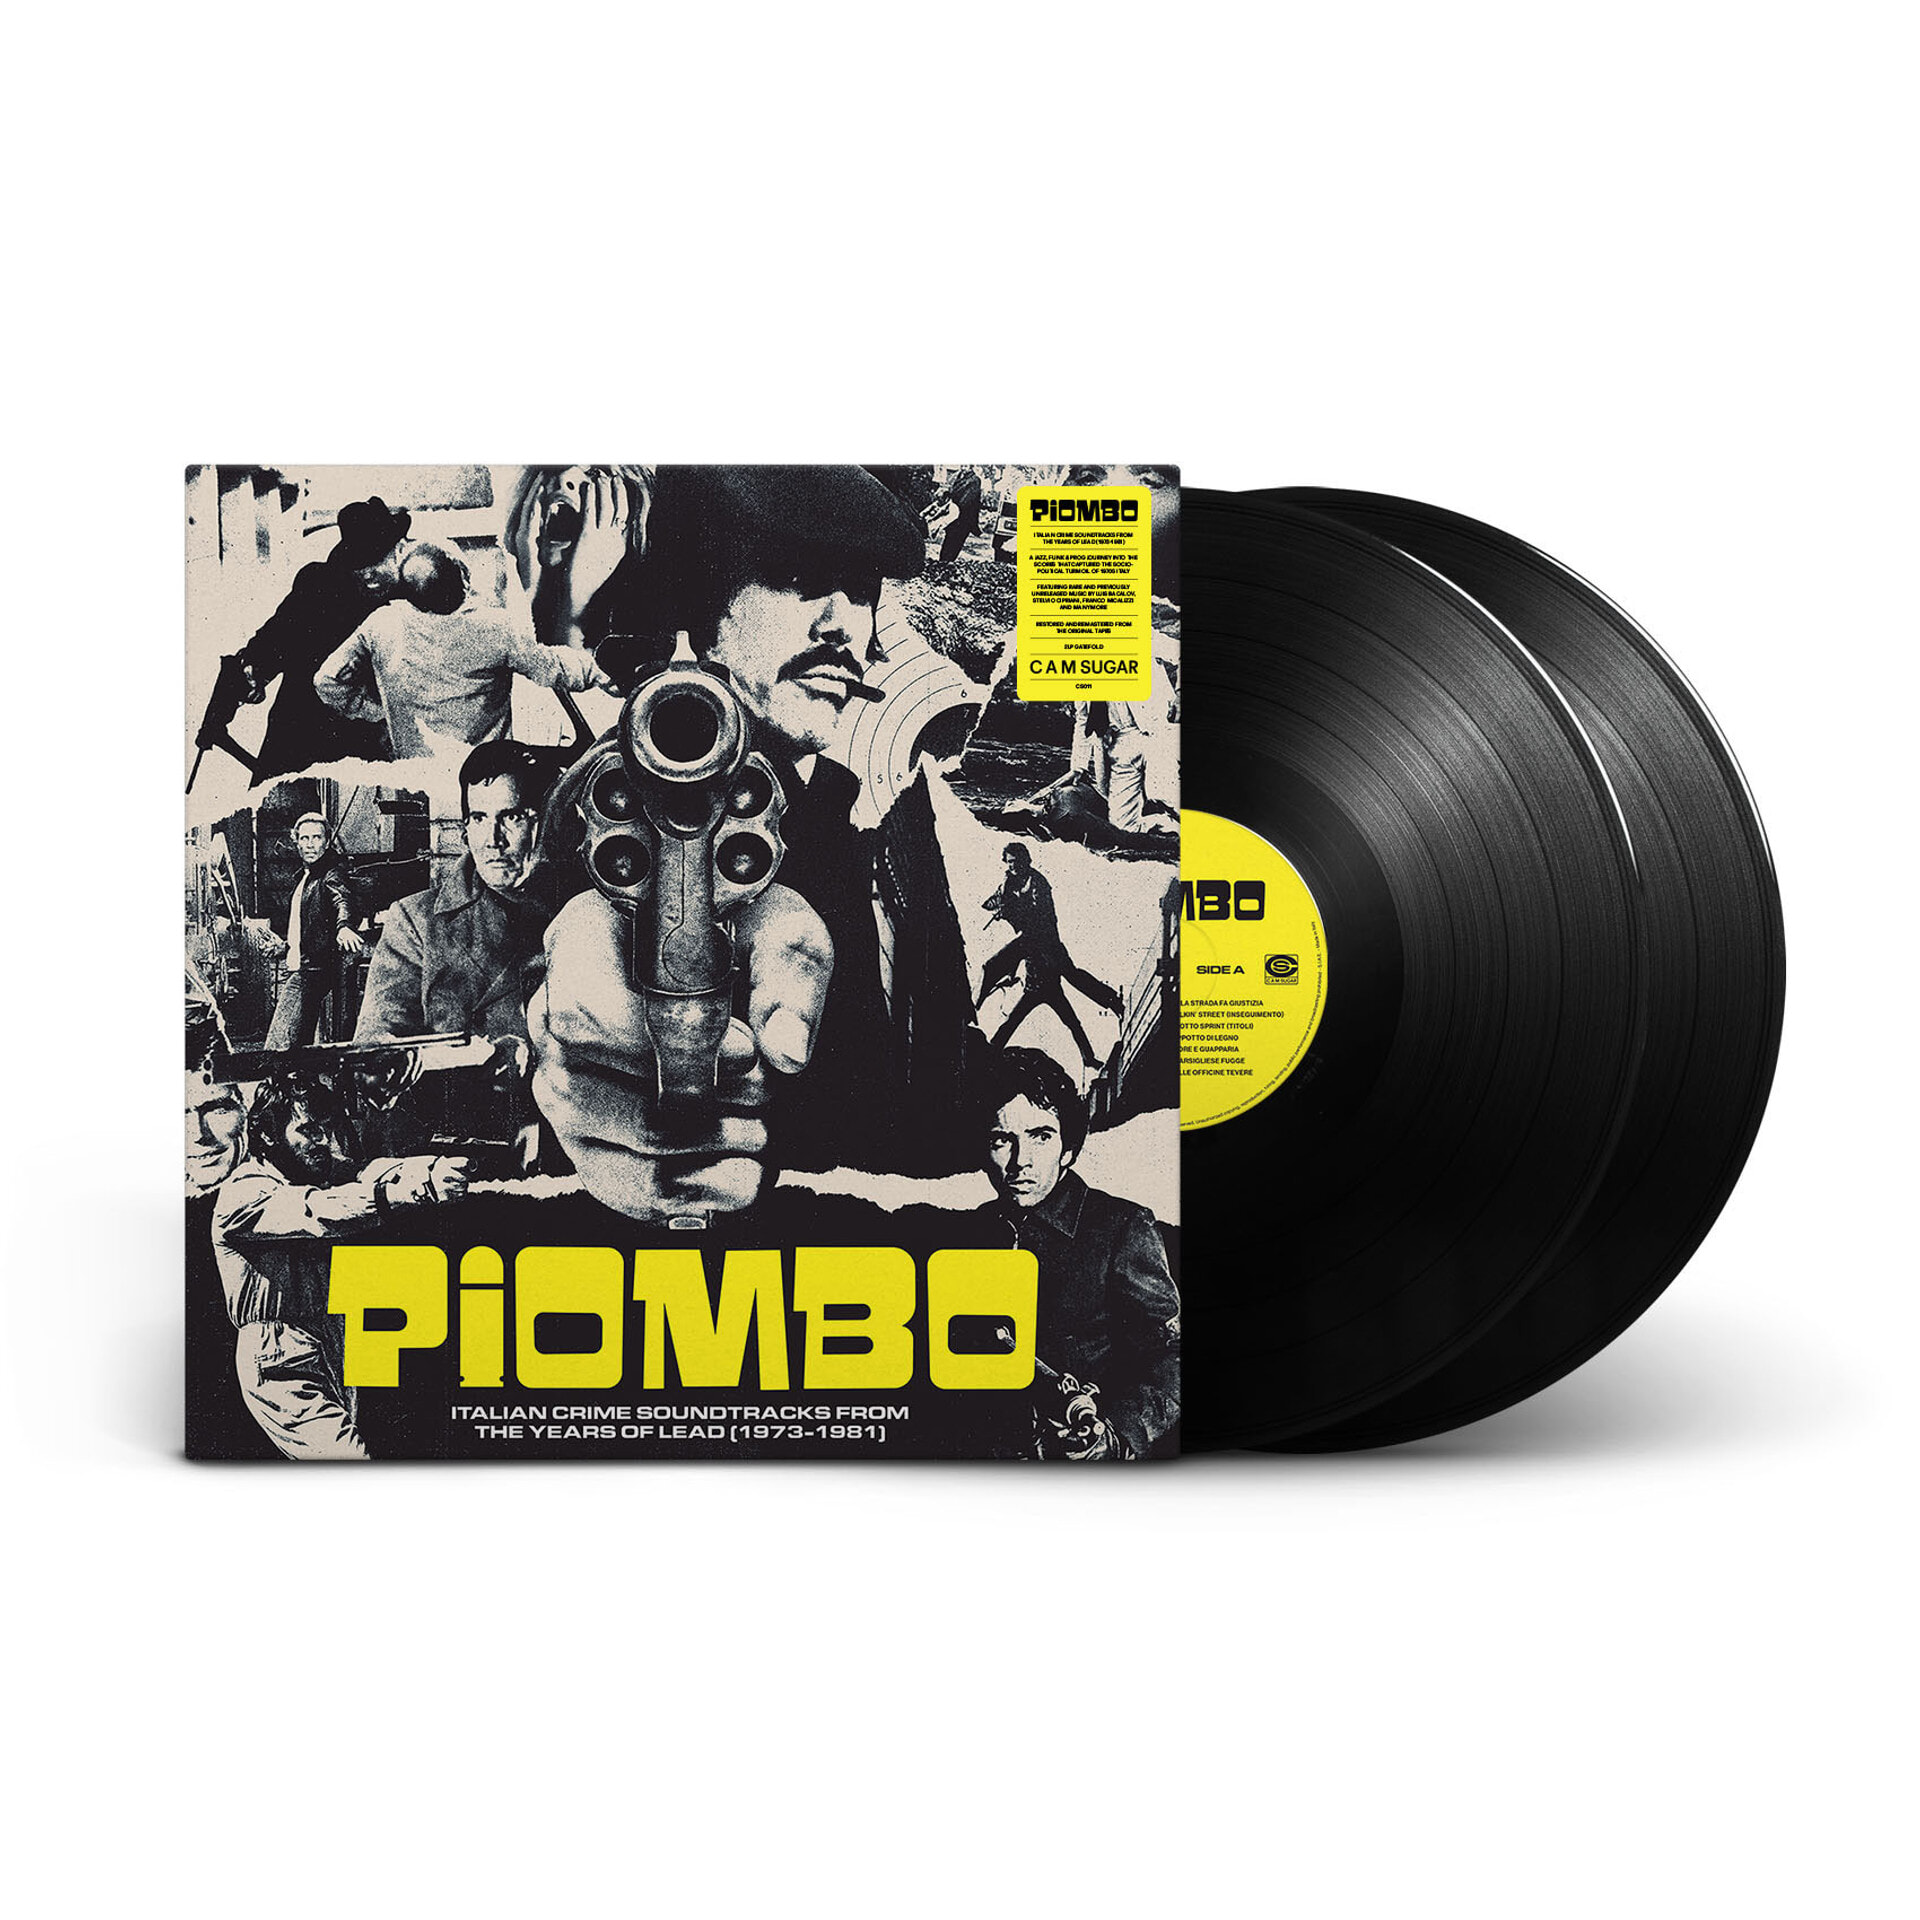 이탈리아 범죄물 영화음악 모음집 (PIOMBO: Italian Crime Soundtracks from the Years of Lead 1973-1981) [2LP]